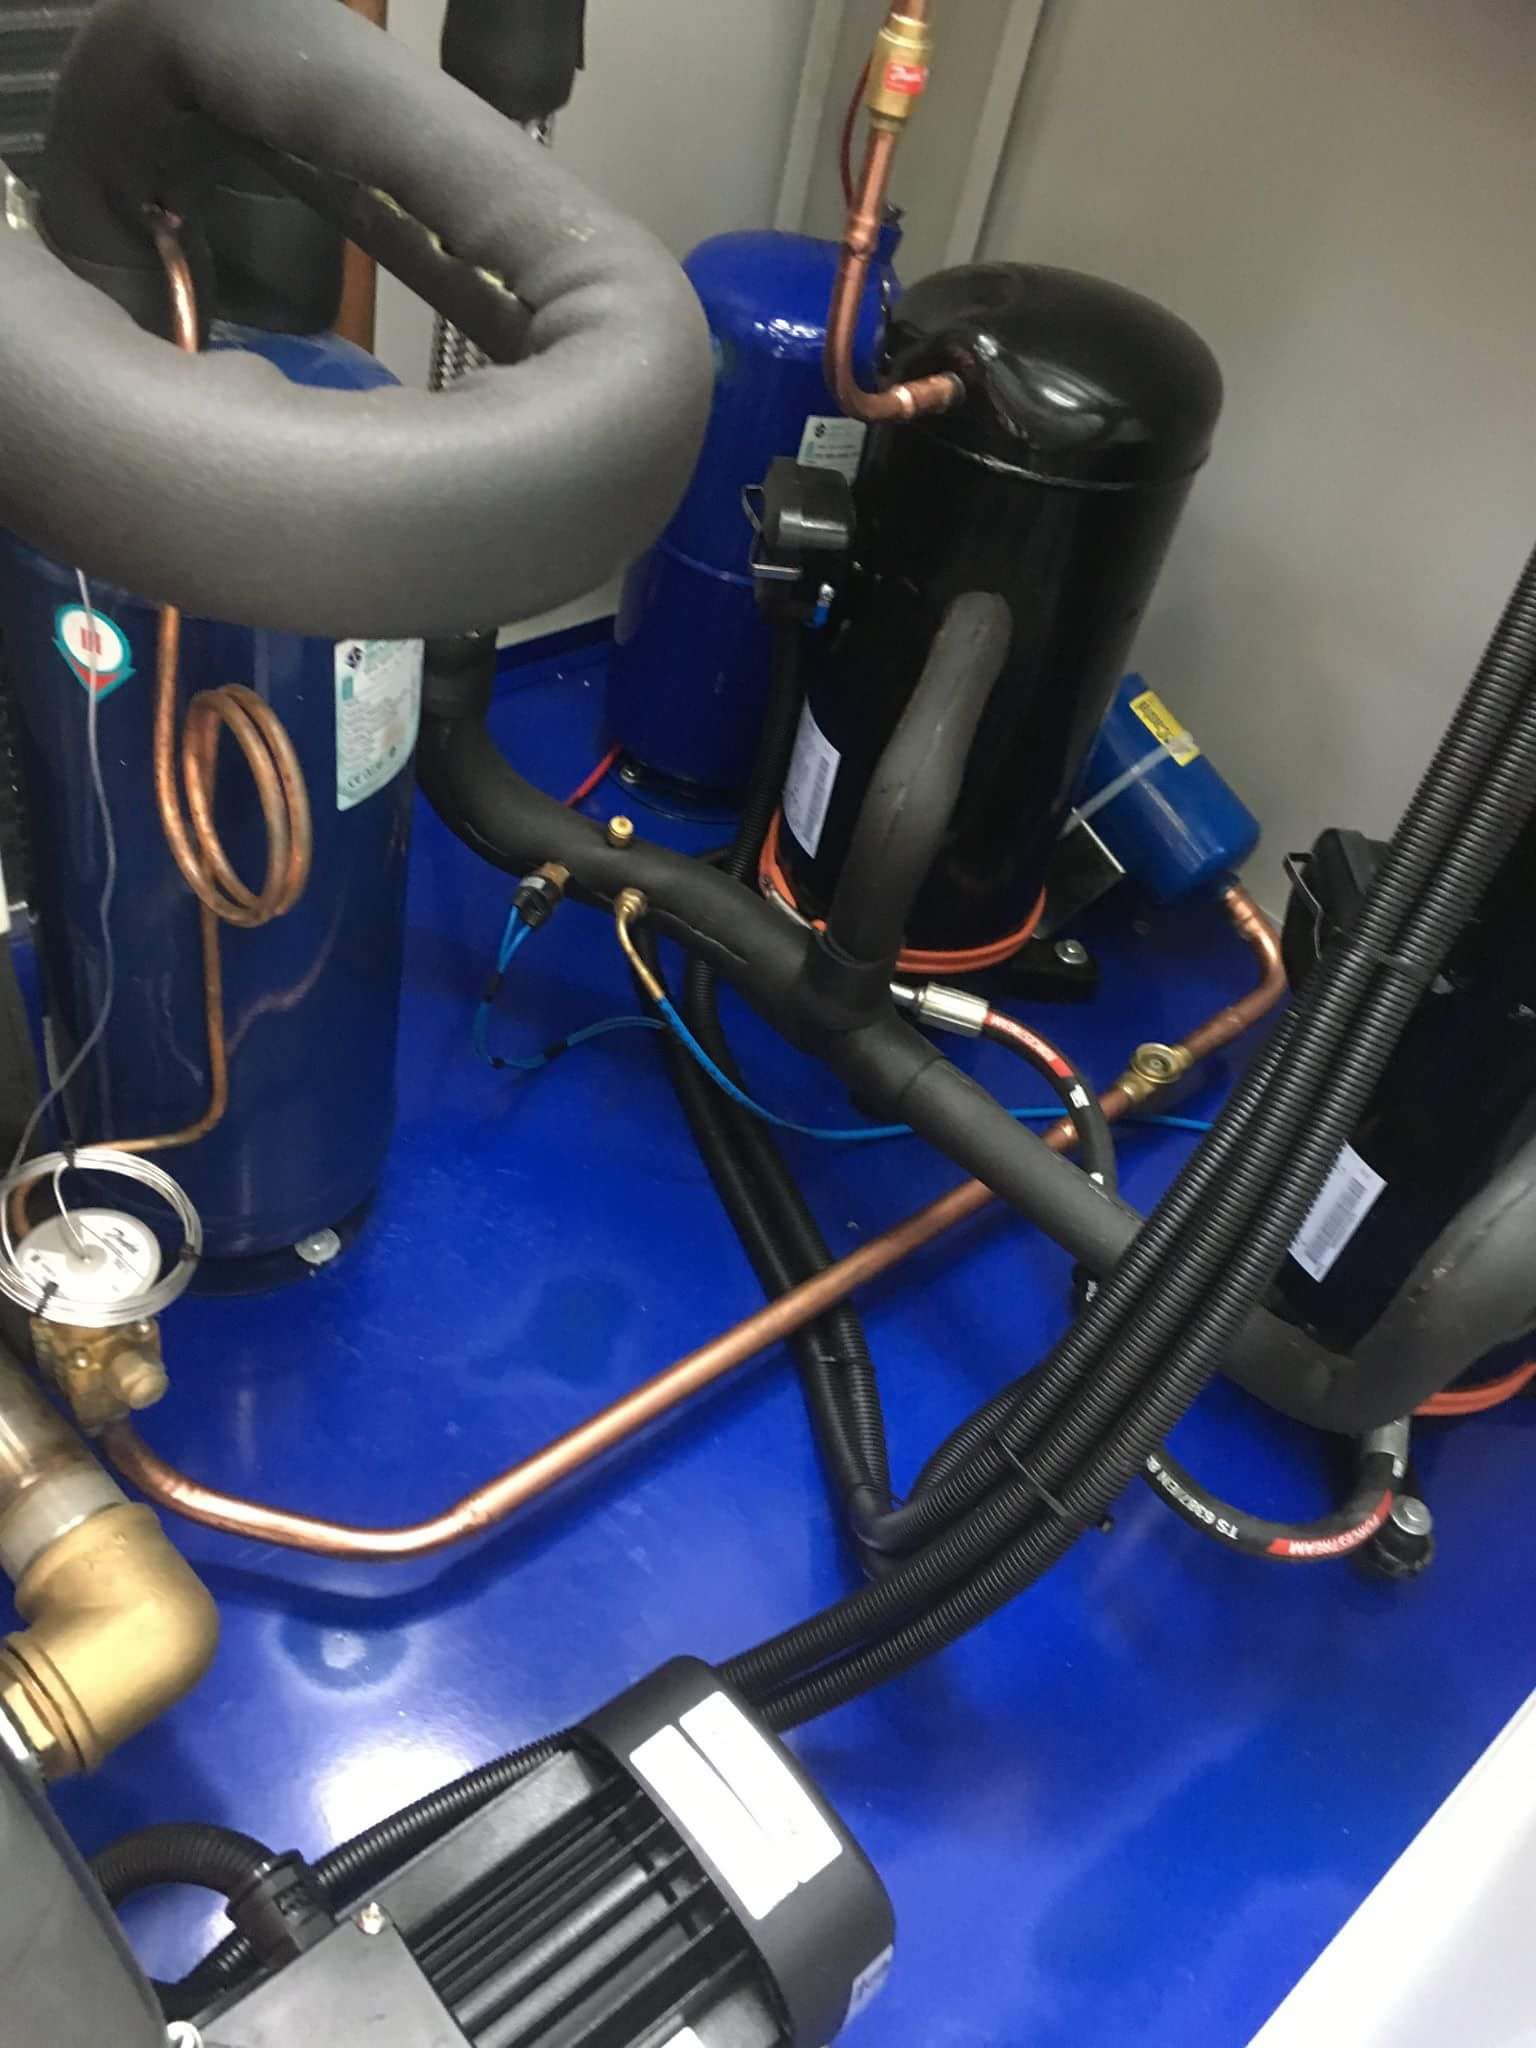 Water chiller - máy làm lạnh nước cho ngành nhựa - chiller ERACO model: DCA – S452 -18HP